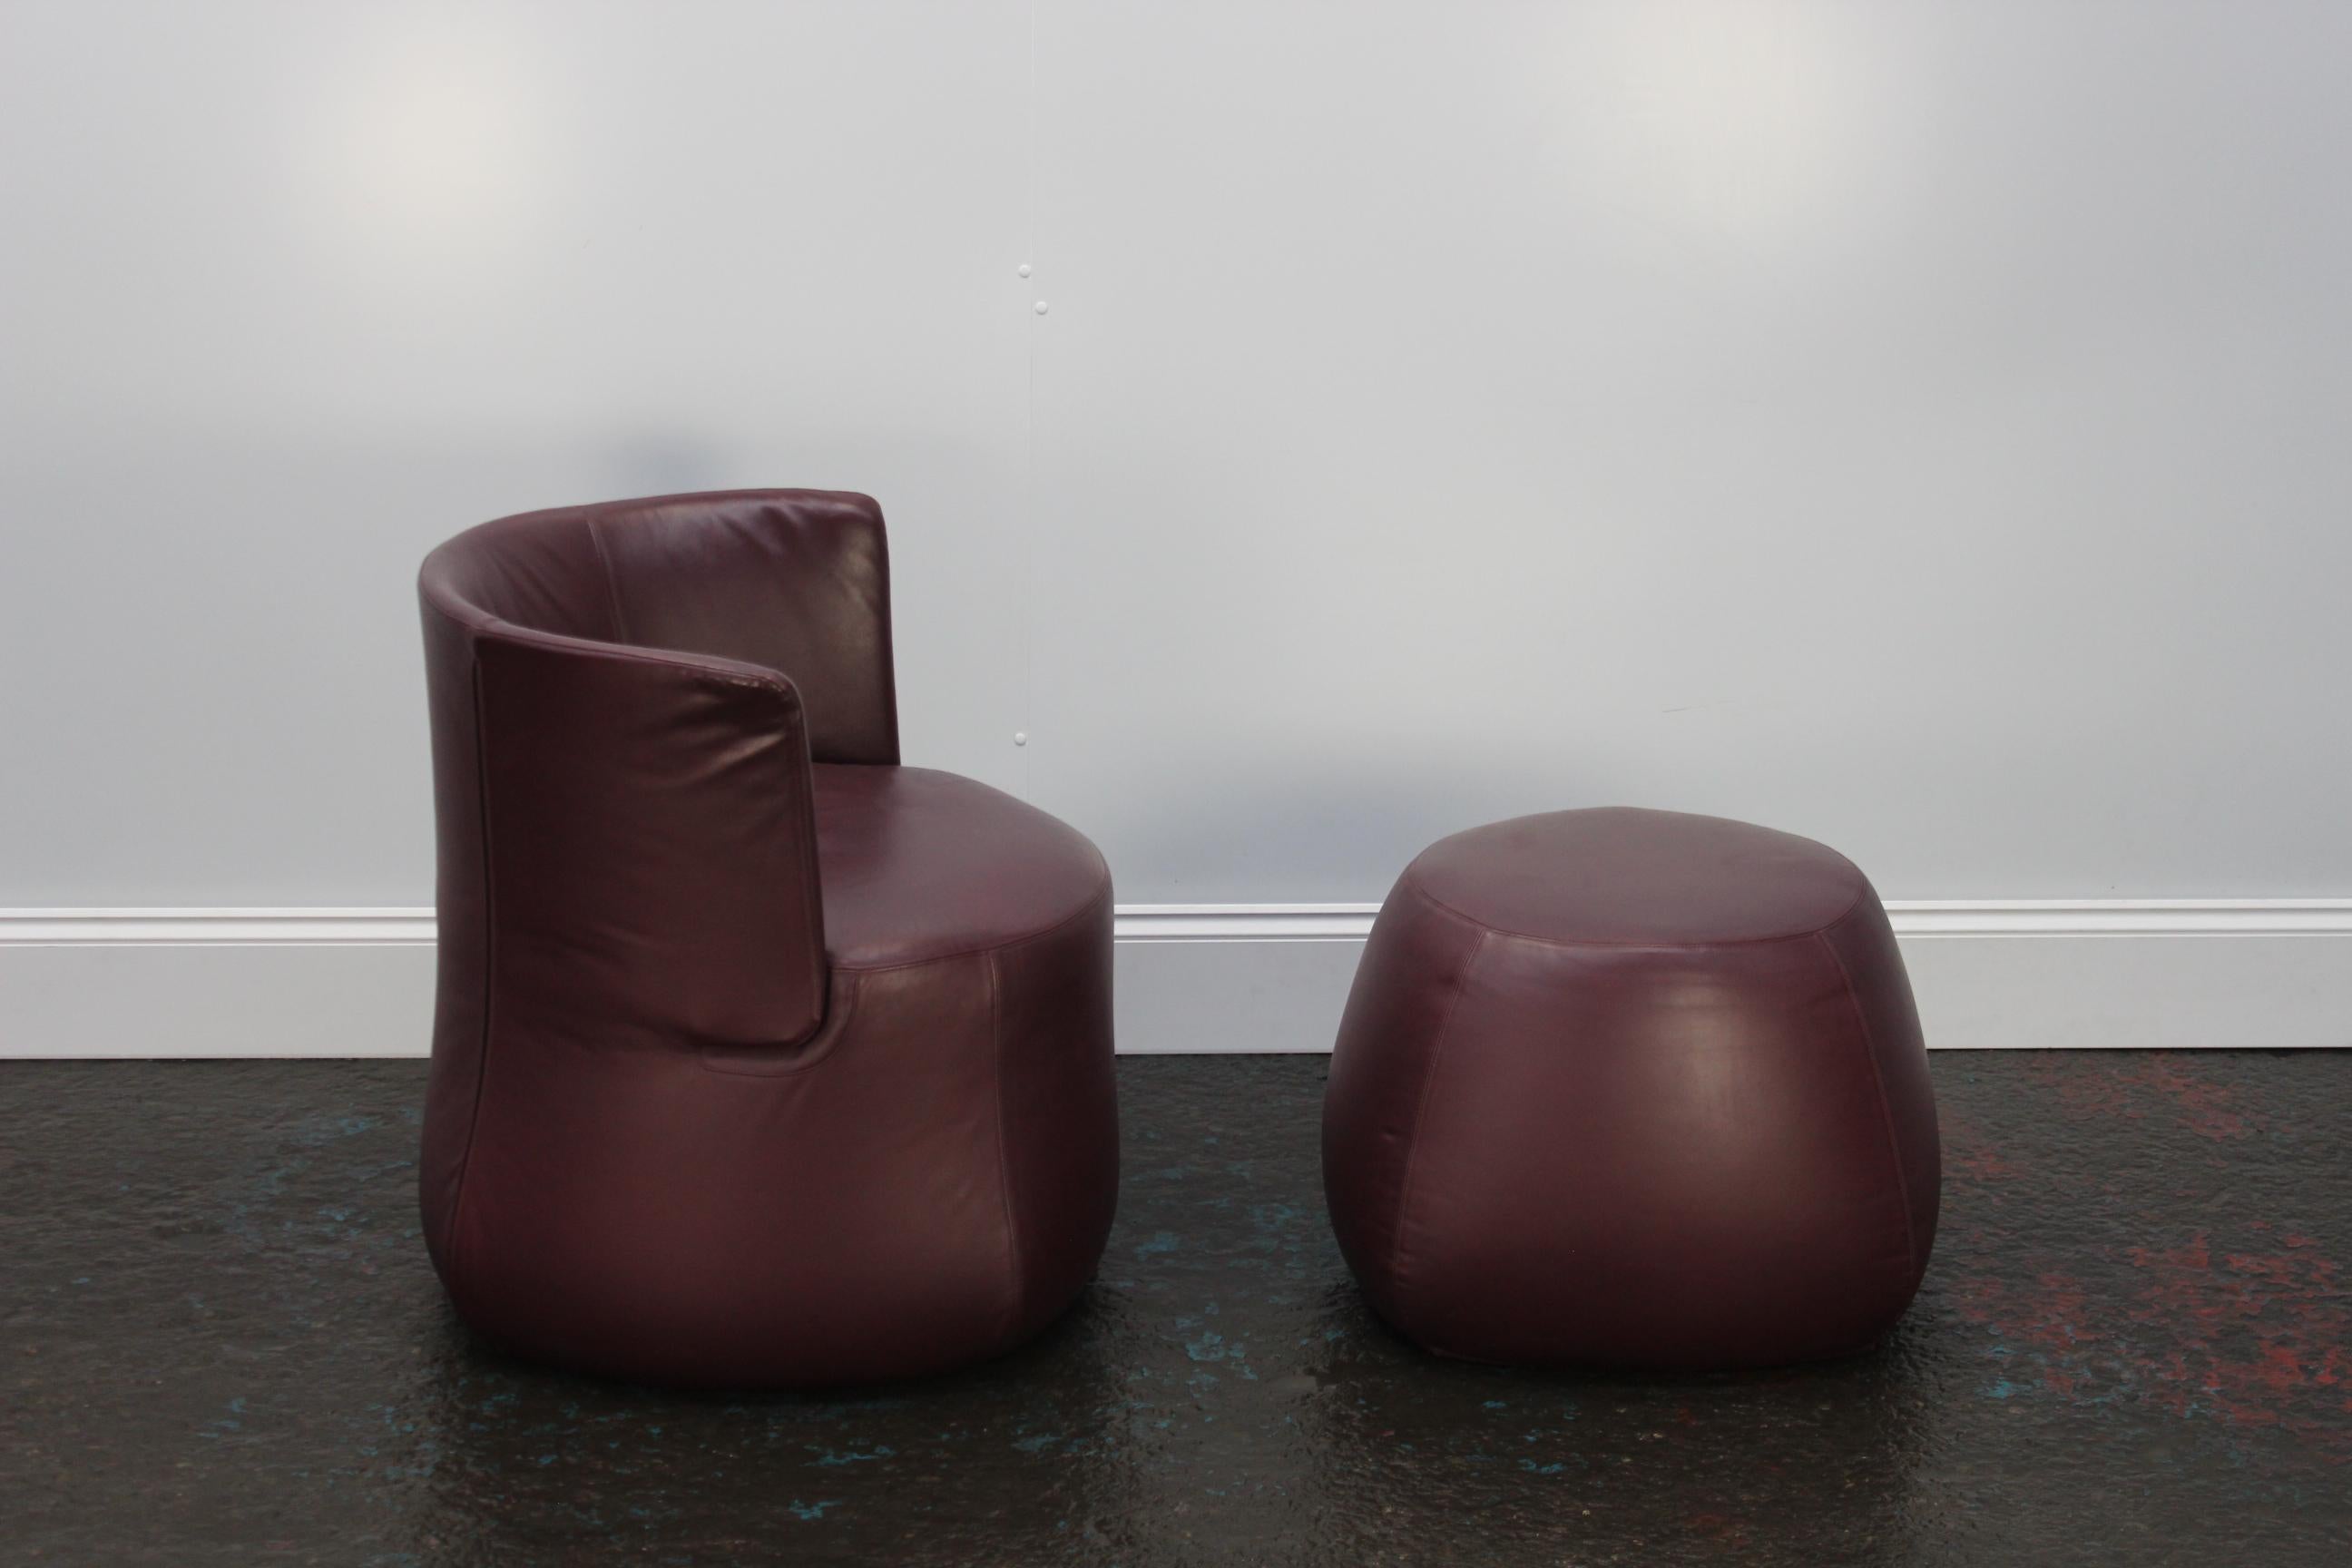 Contemporary B&B Italia “Fat Sofa” Armchair and Pouf in Aubergine Purple “Gamma” Leather